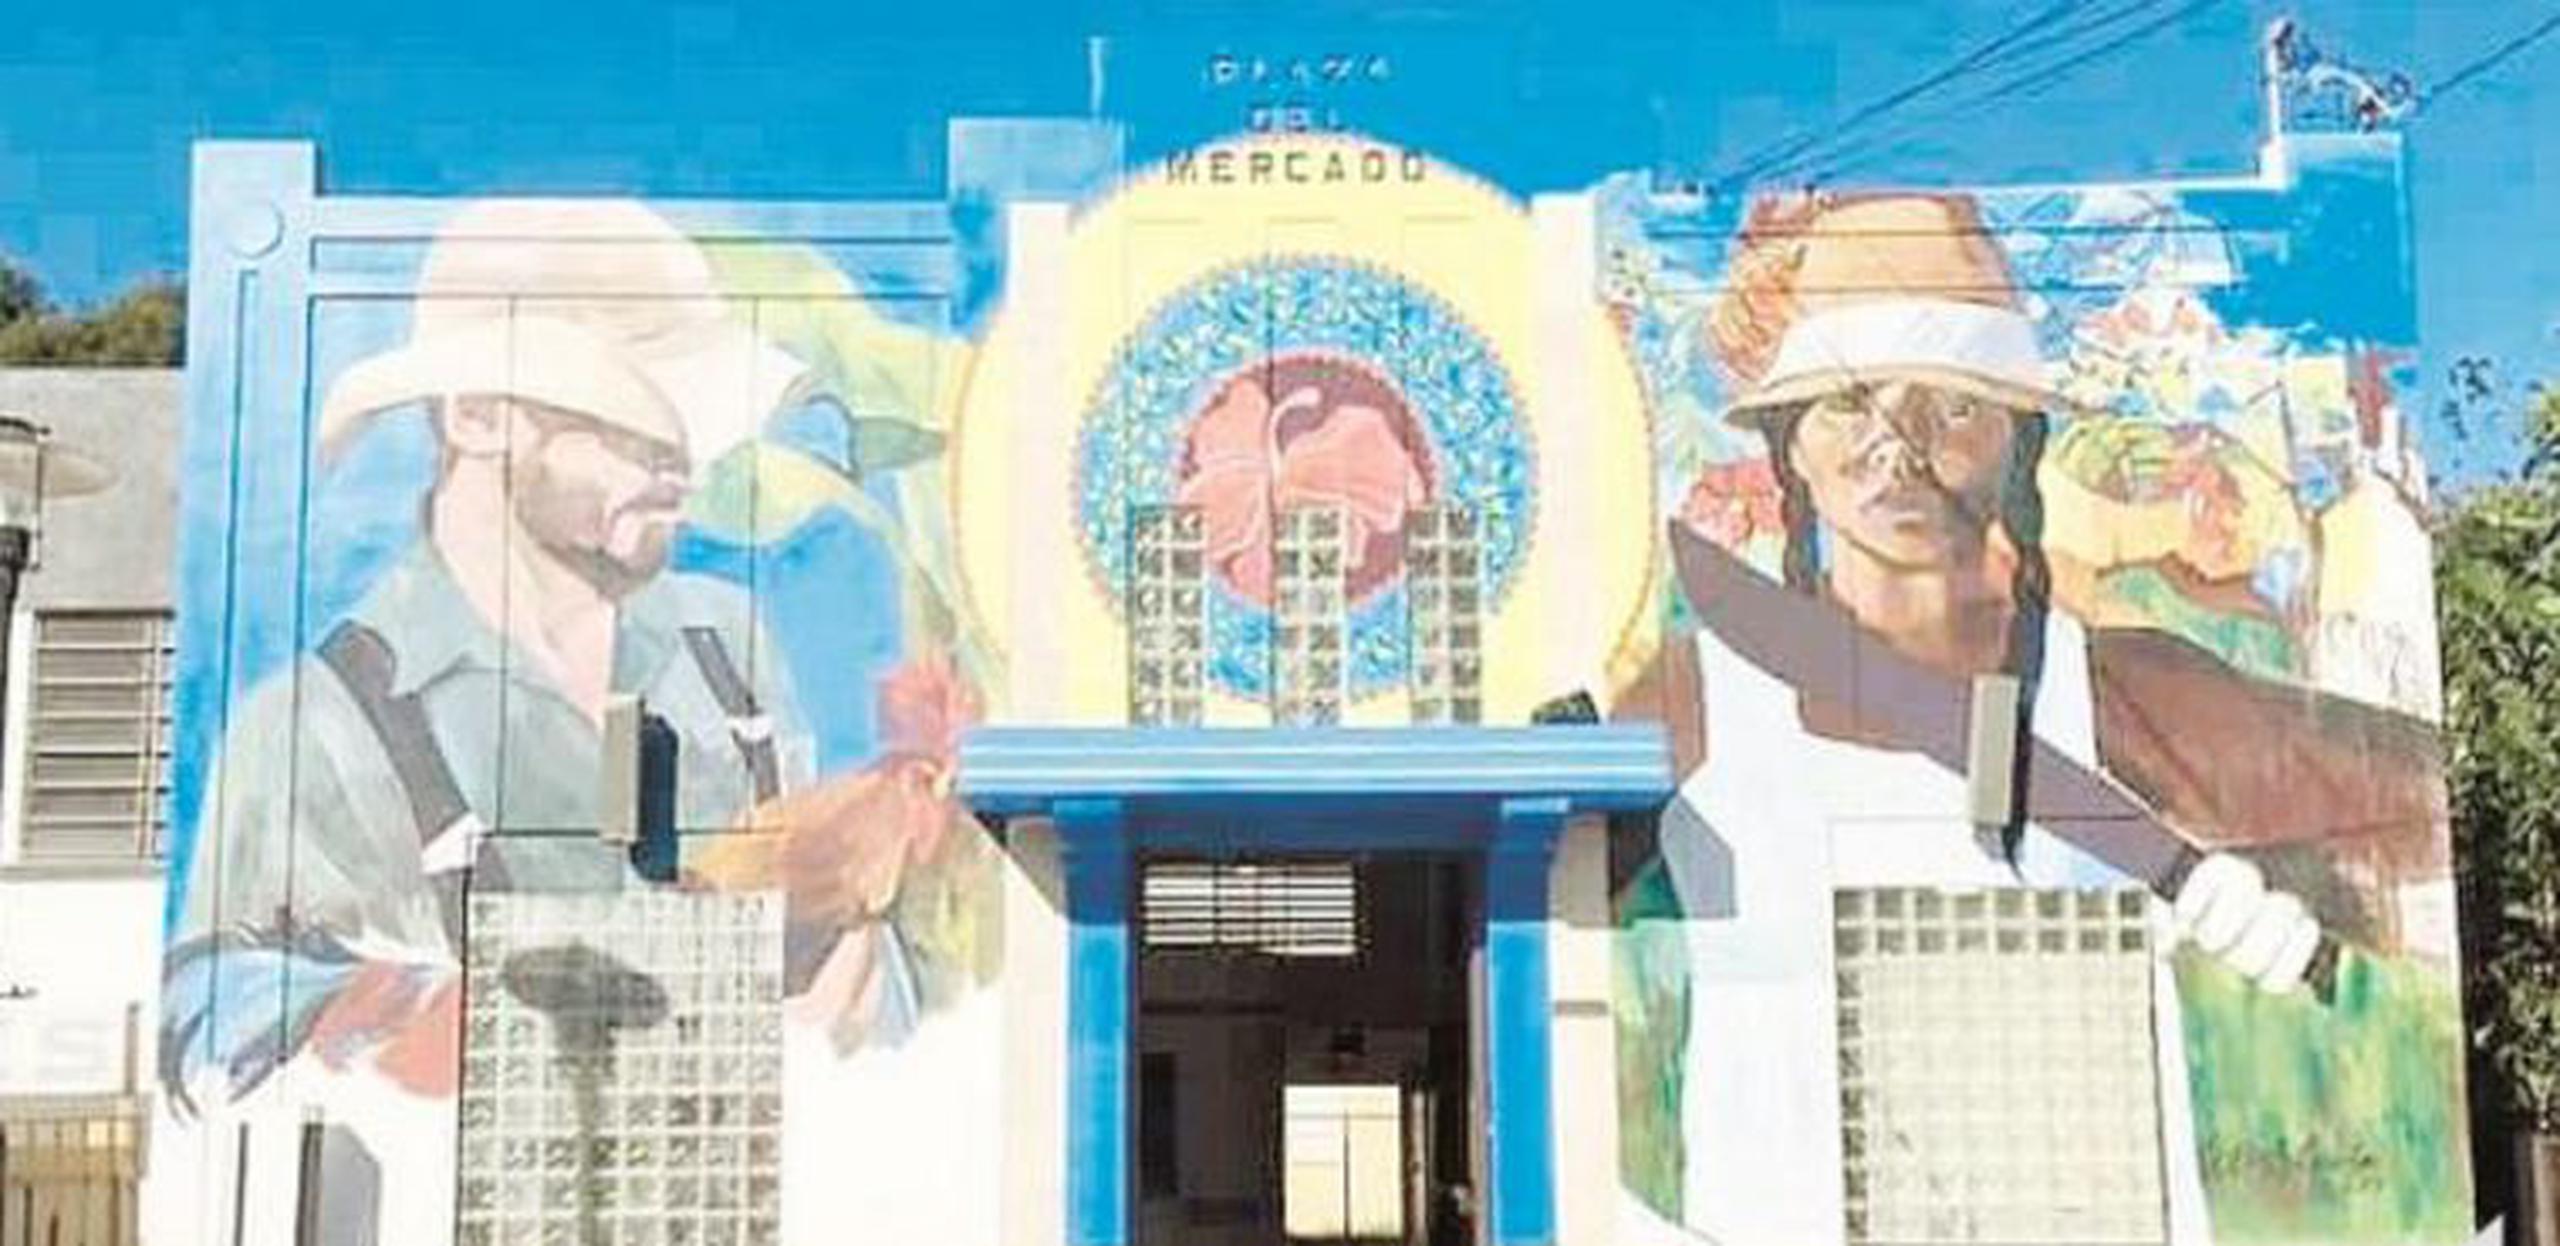 Hace varias semanas se le encomendó a la artista Betsy Casañas pintar un imponente  mural en la fachada de la plaza del mercado. (Suministrada)